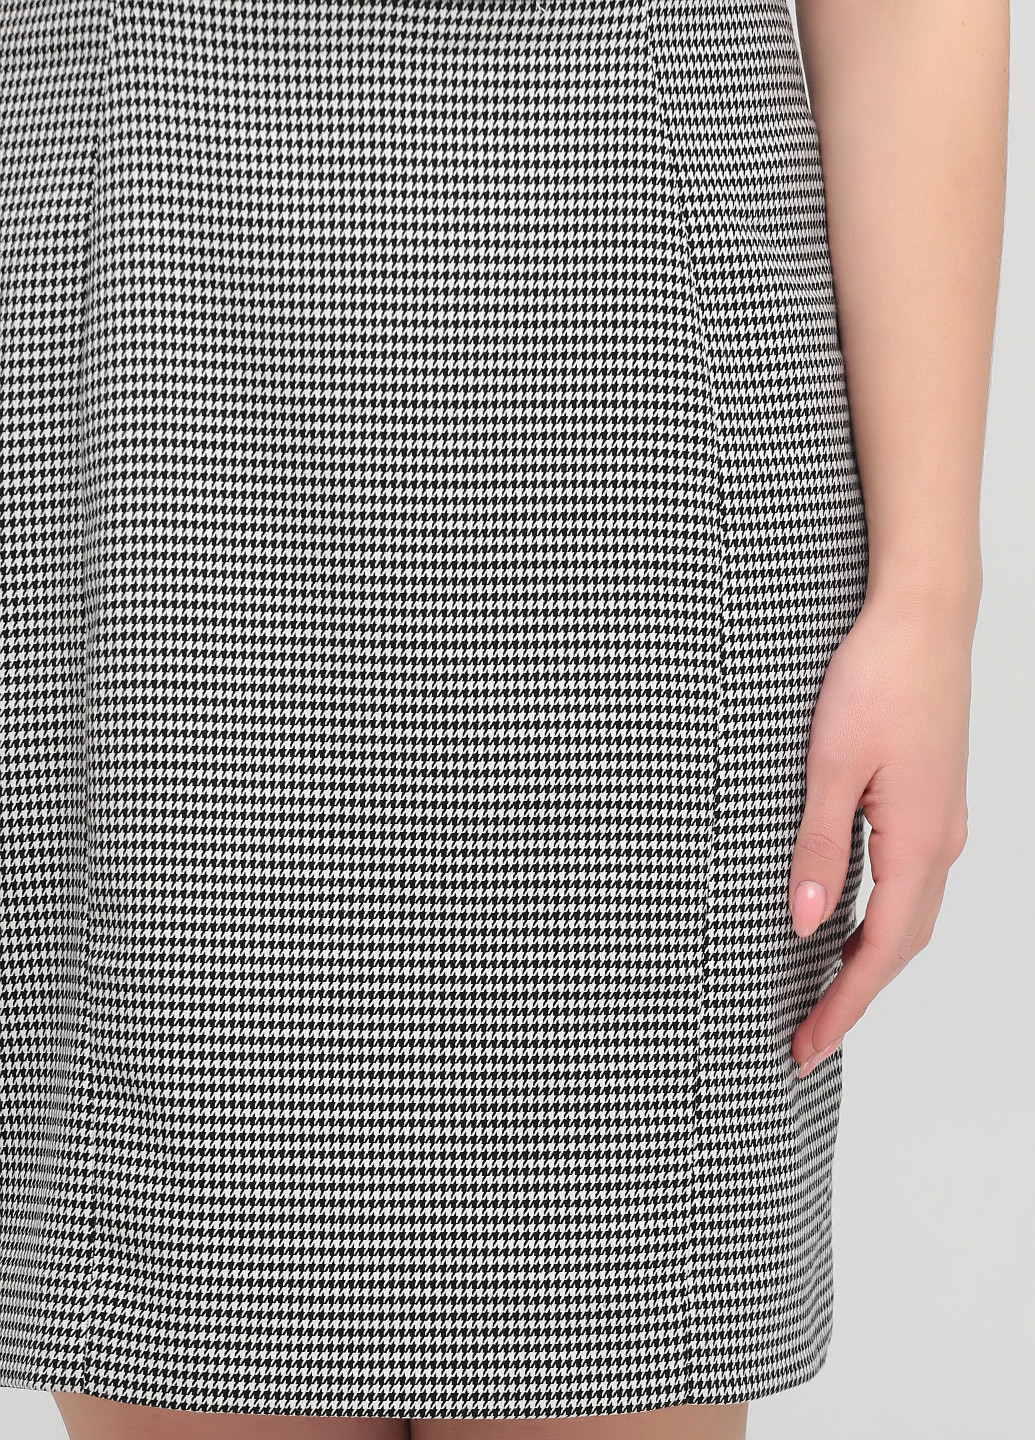 Черно-белое деловое платье футляр H&M с узором пье-де-пуль «гусиная лапка»